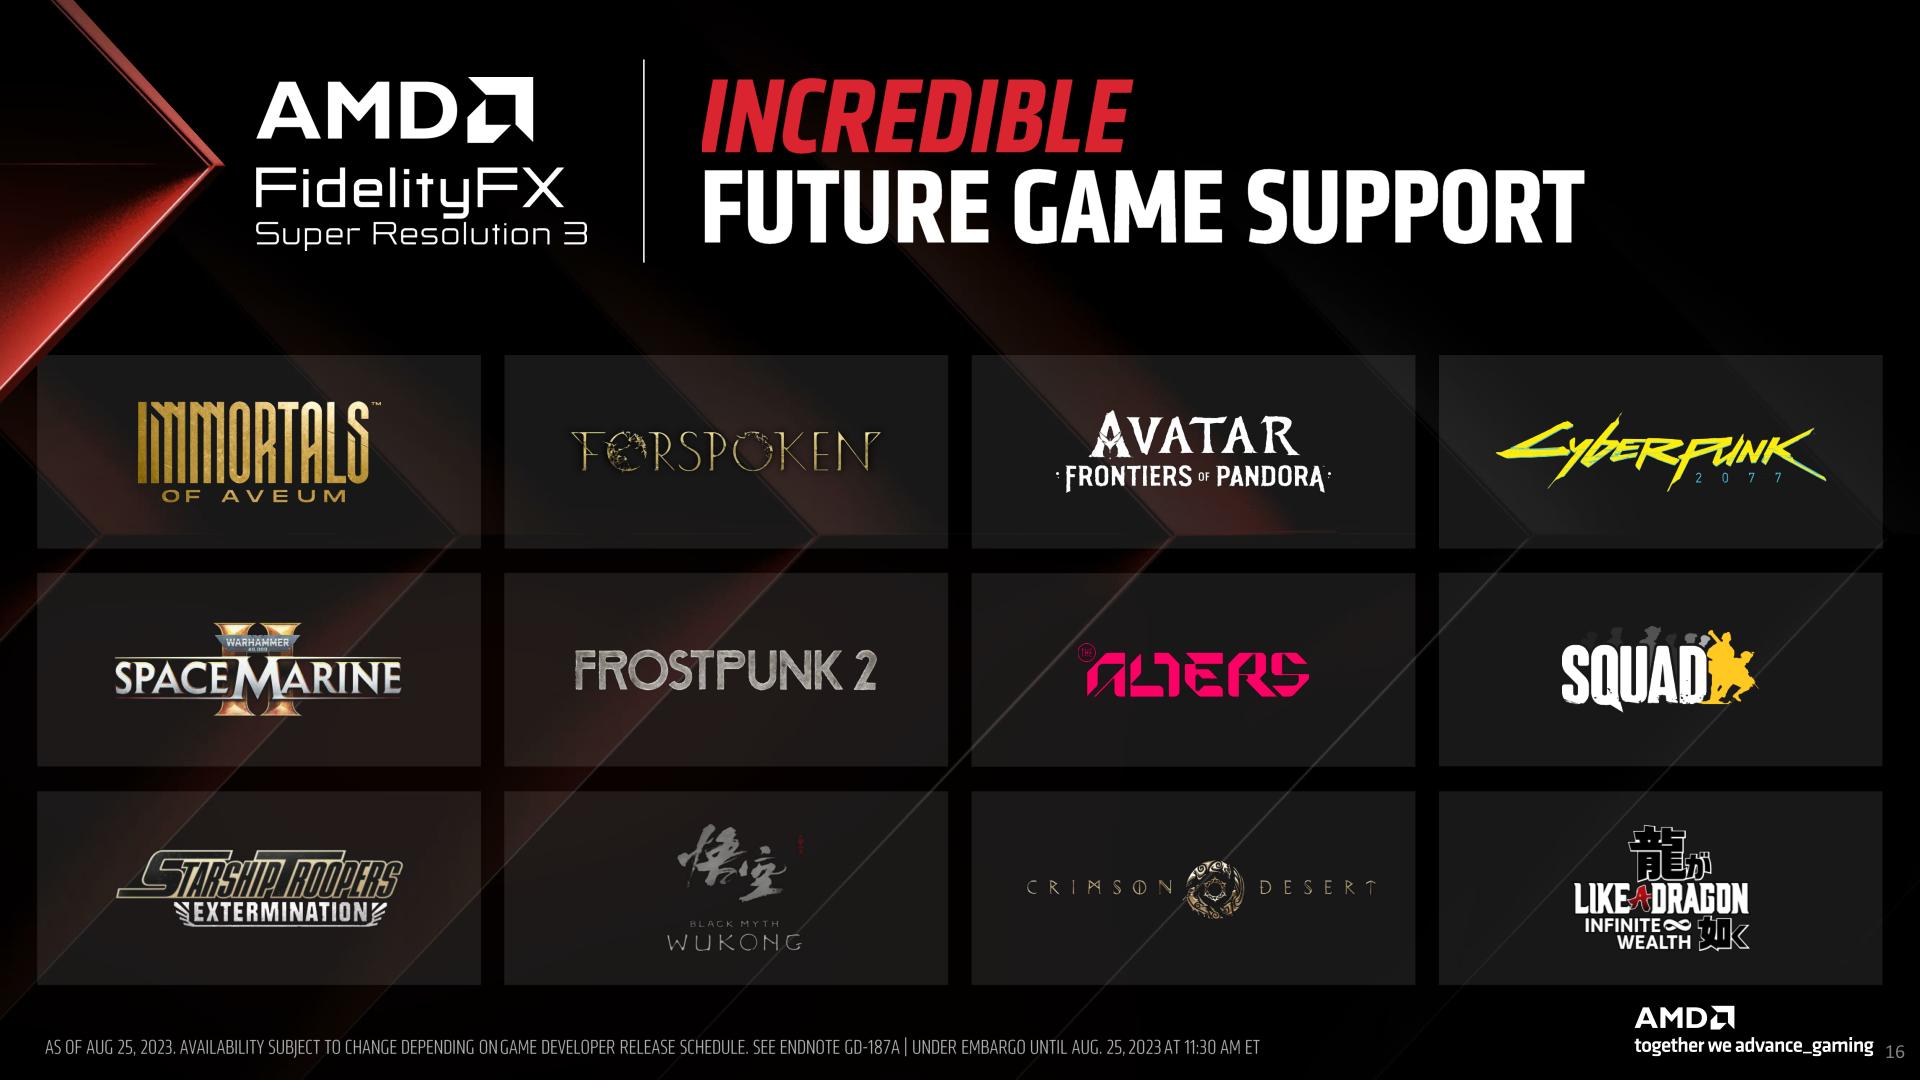 AMD anuncia FidelityFX Super Resolution 3 para todas las GPUs desde la RX 5700 en adelante2